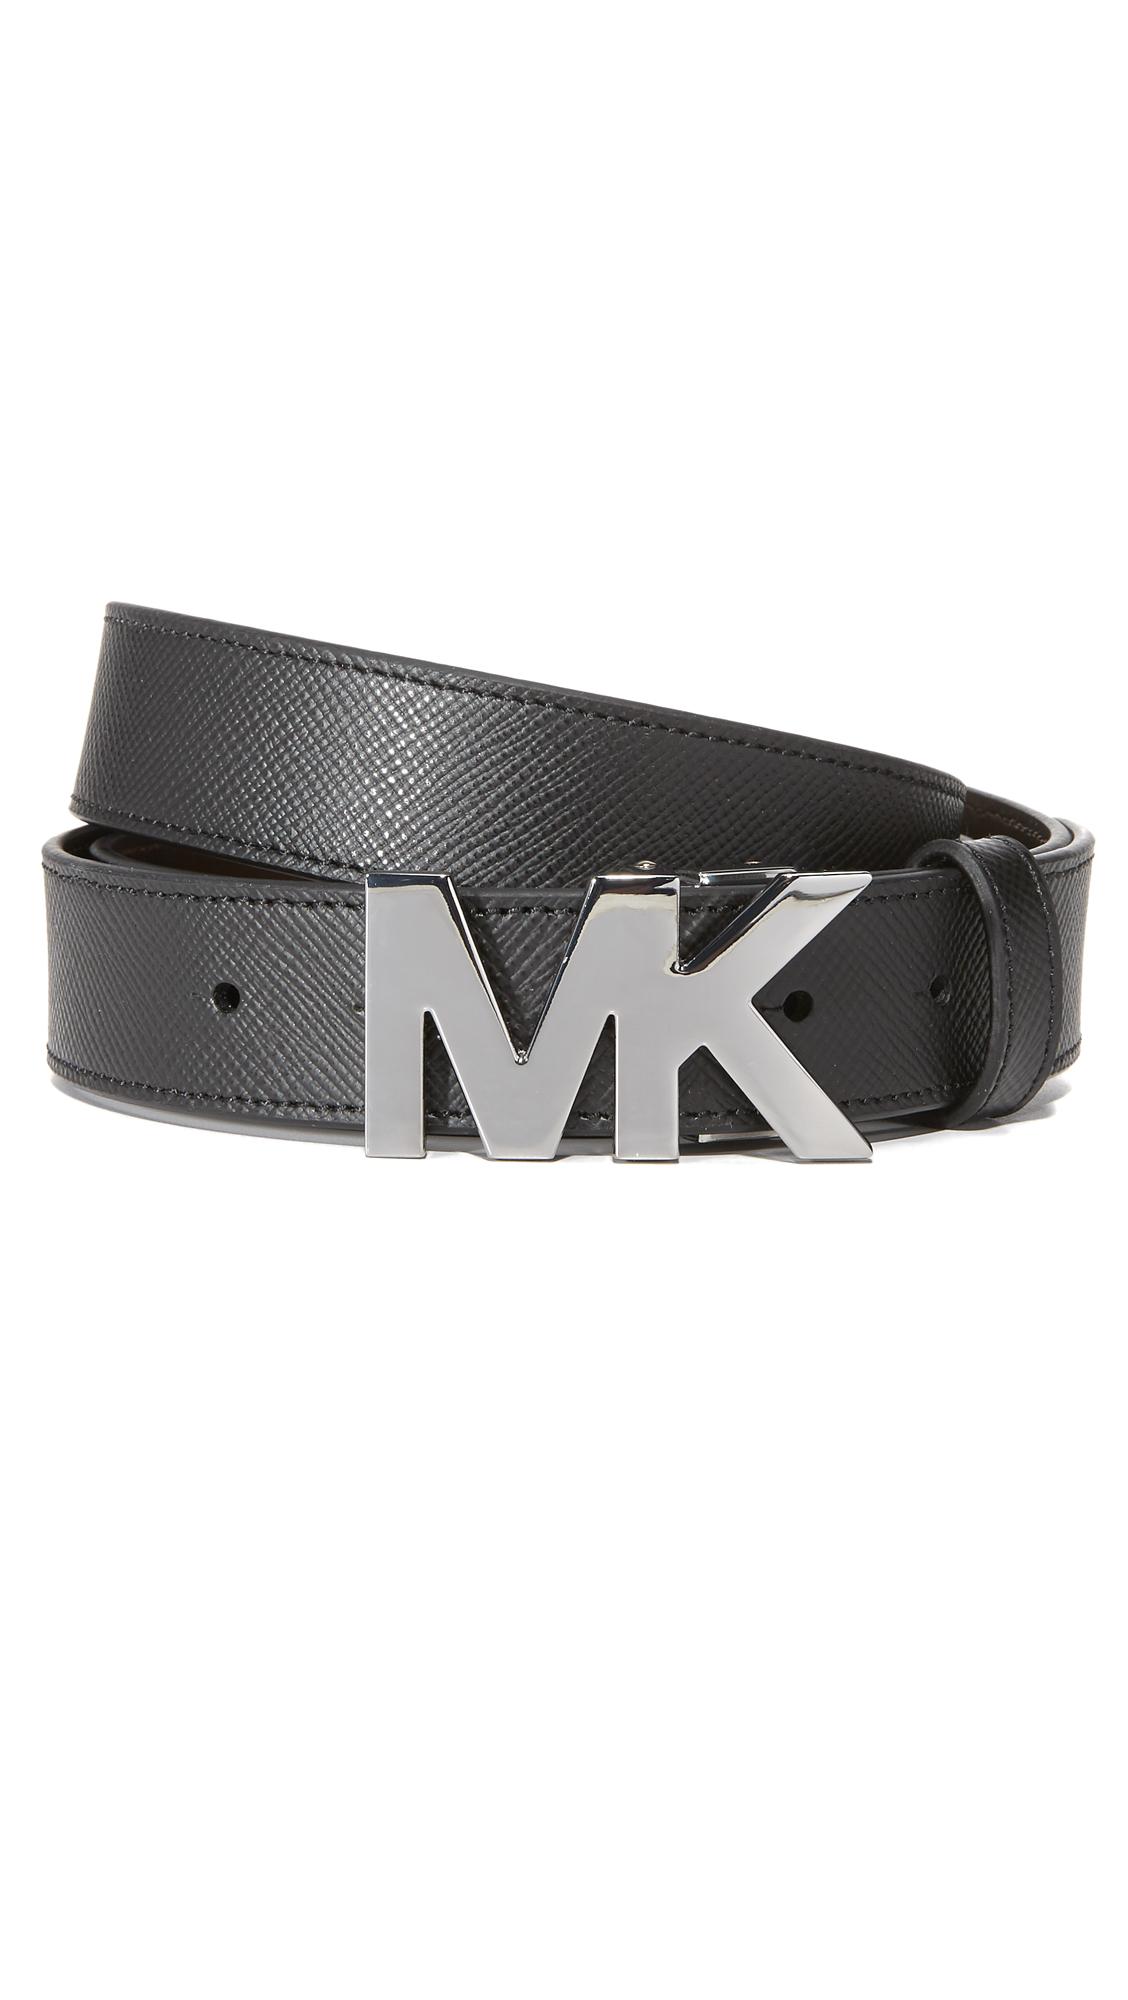 Michael Kors Leather Customizable Belt Set in Black for Men - Lyst